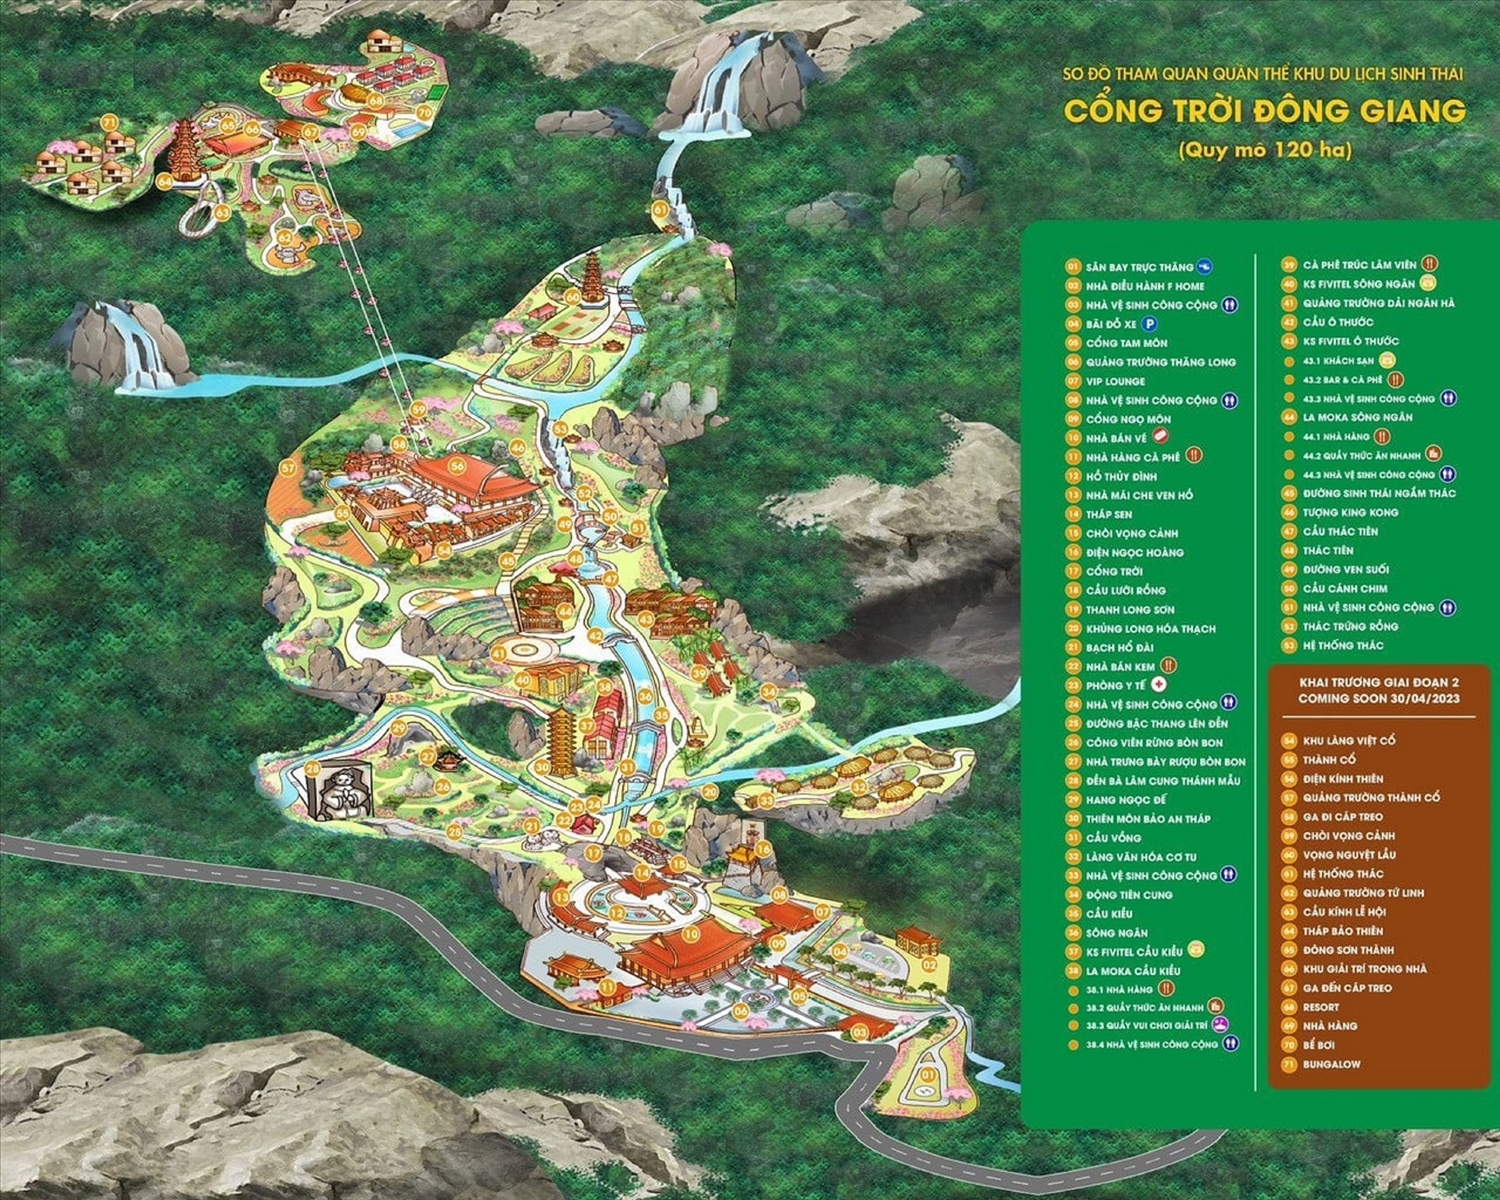 Bản đồ khu du lịch sinh thái Cổng trời Đông Giang, lọt giữa màu xanh ngút ngàn của rừng